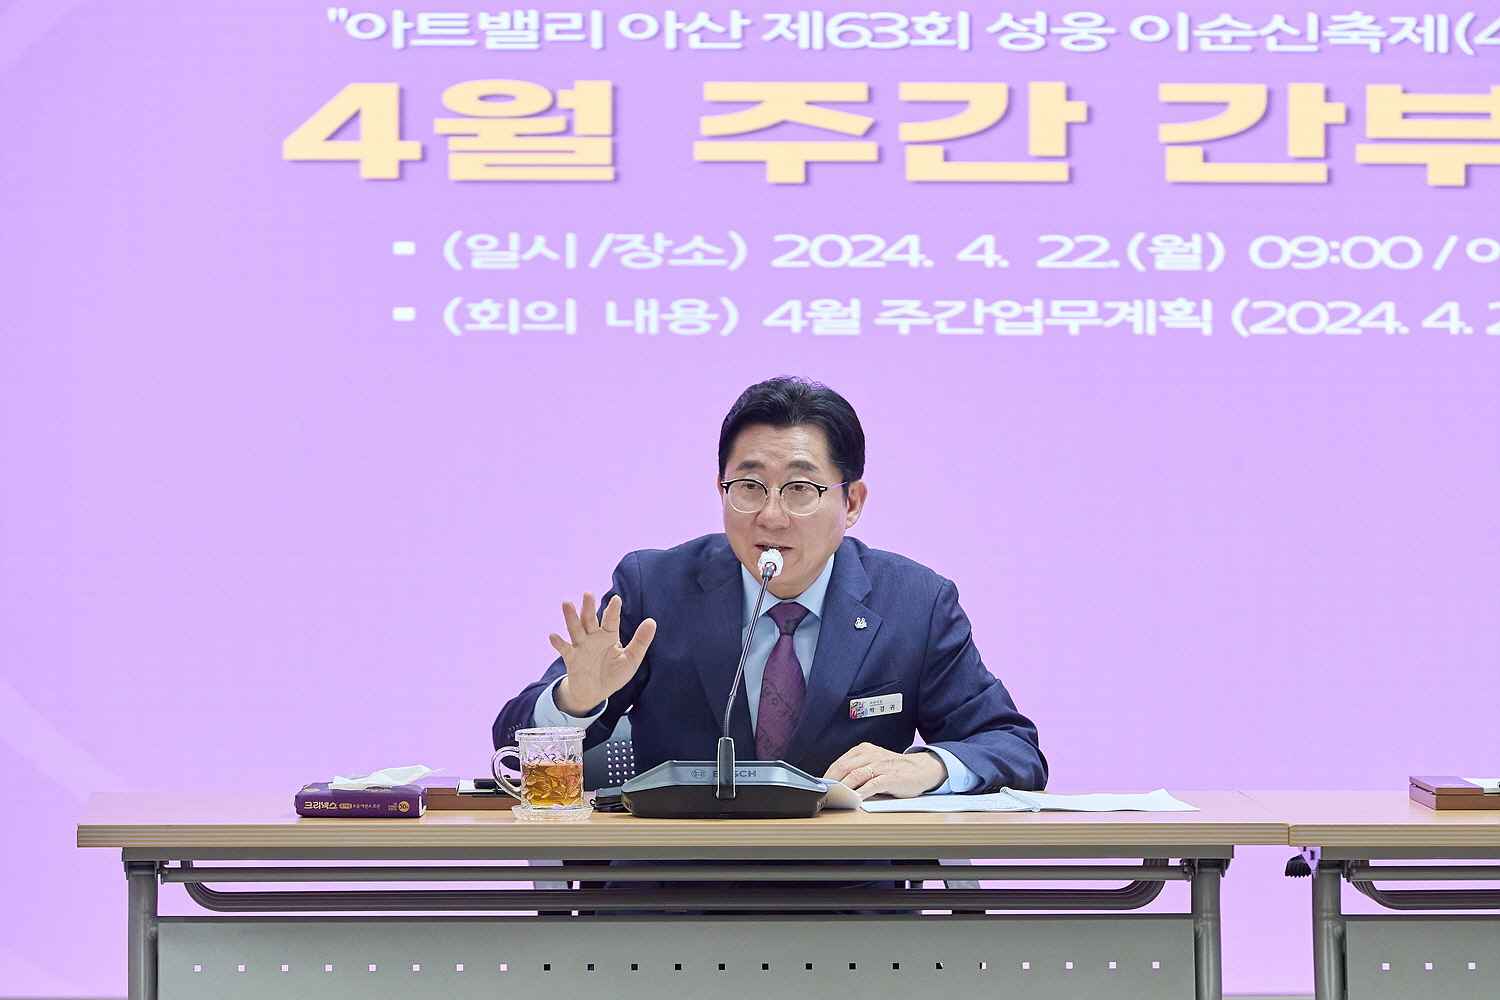 박경귀 아산시장 “성웅 이순신 축제, ‘4無’ 목표로 준비에 만전” 지시  관련사진